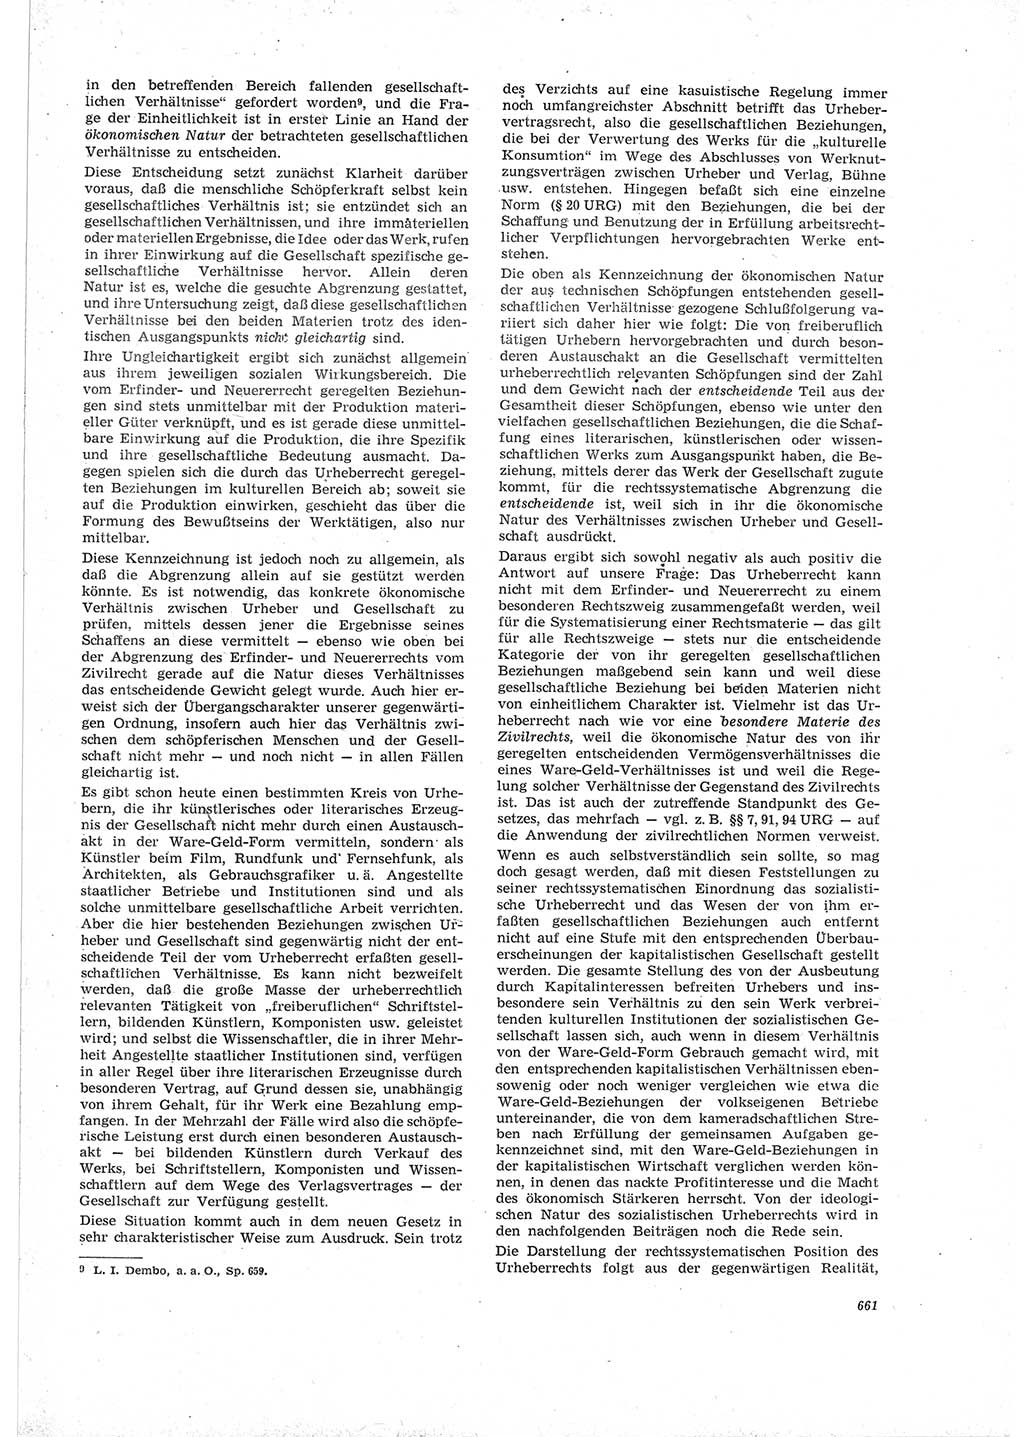 Neue Justiz (NJ), Zeitschrift für Recht und Rechtswissenschaft [Deutsche Demokratische Republik (DDR)], 19. Jahrgang 1965, Seite 661 (NJ DDR 1965, S. 661)